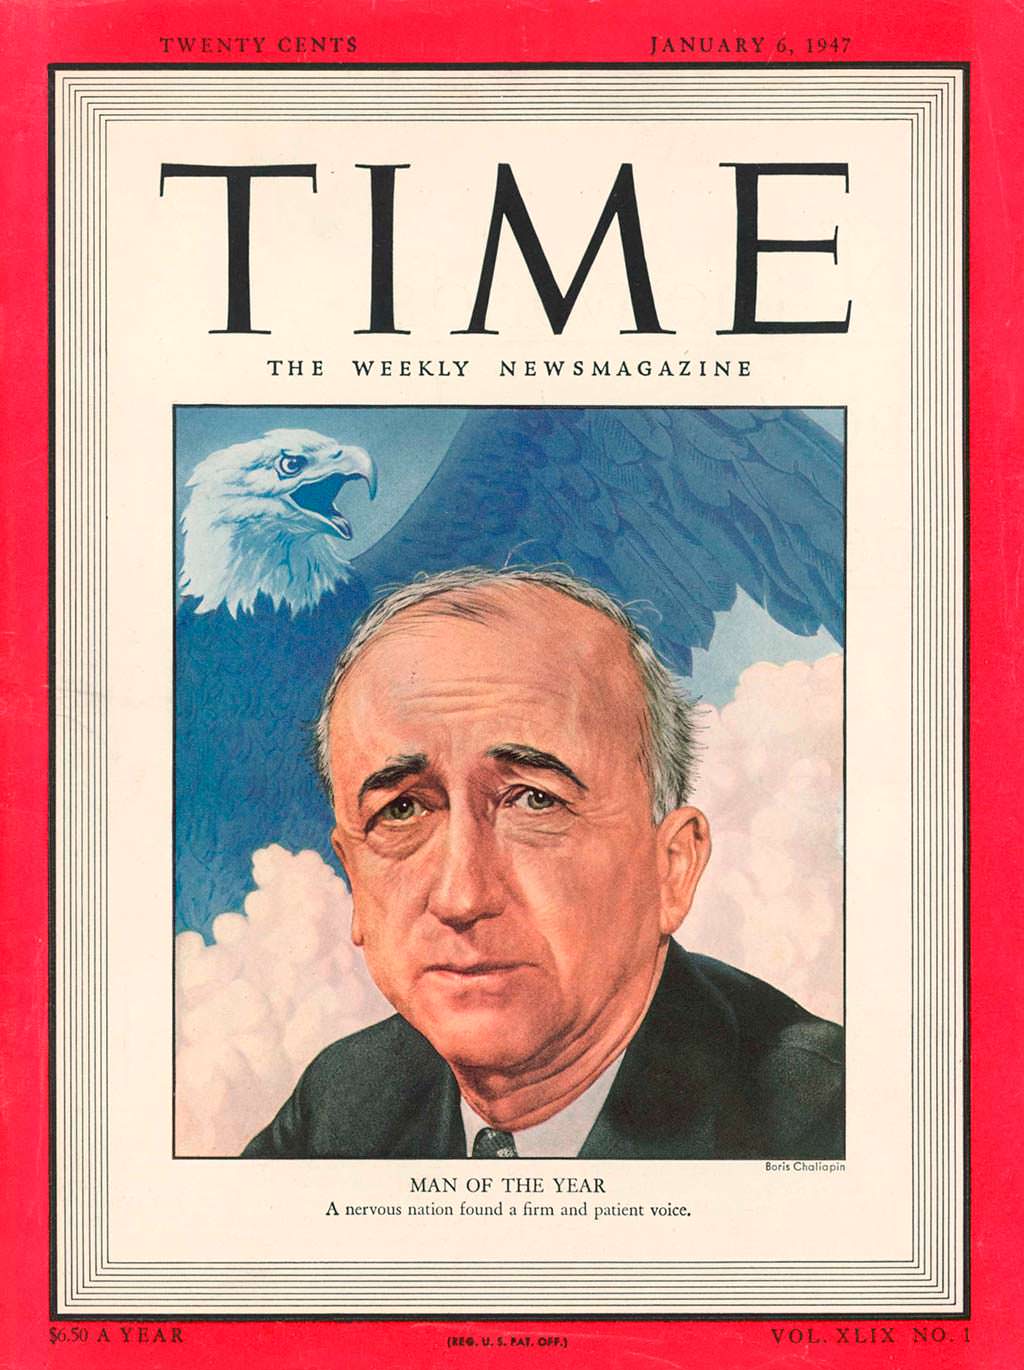 1946 год. Госсекретарь США Джеймс Бирнс на обложке Time